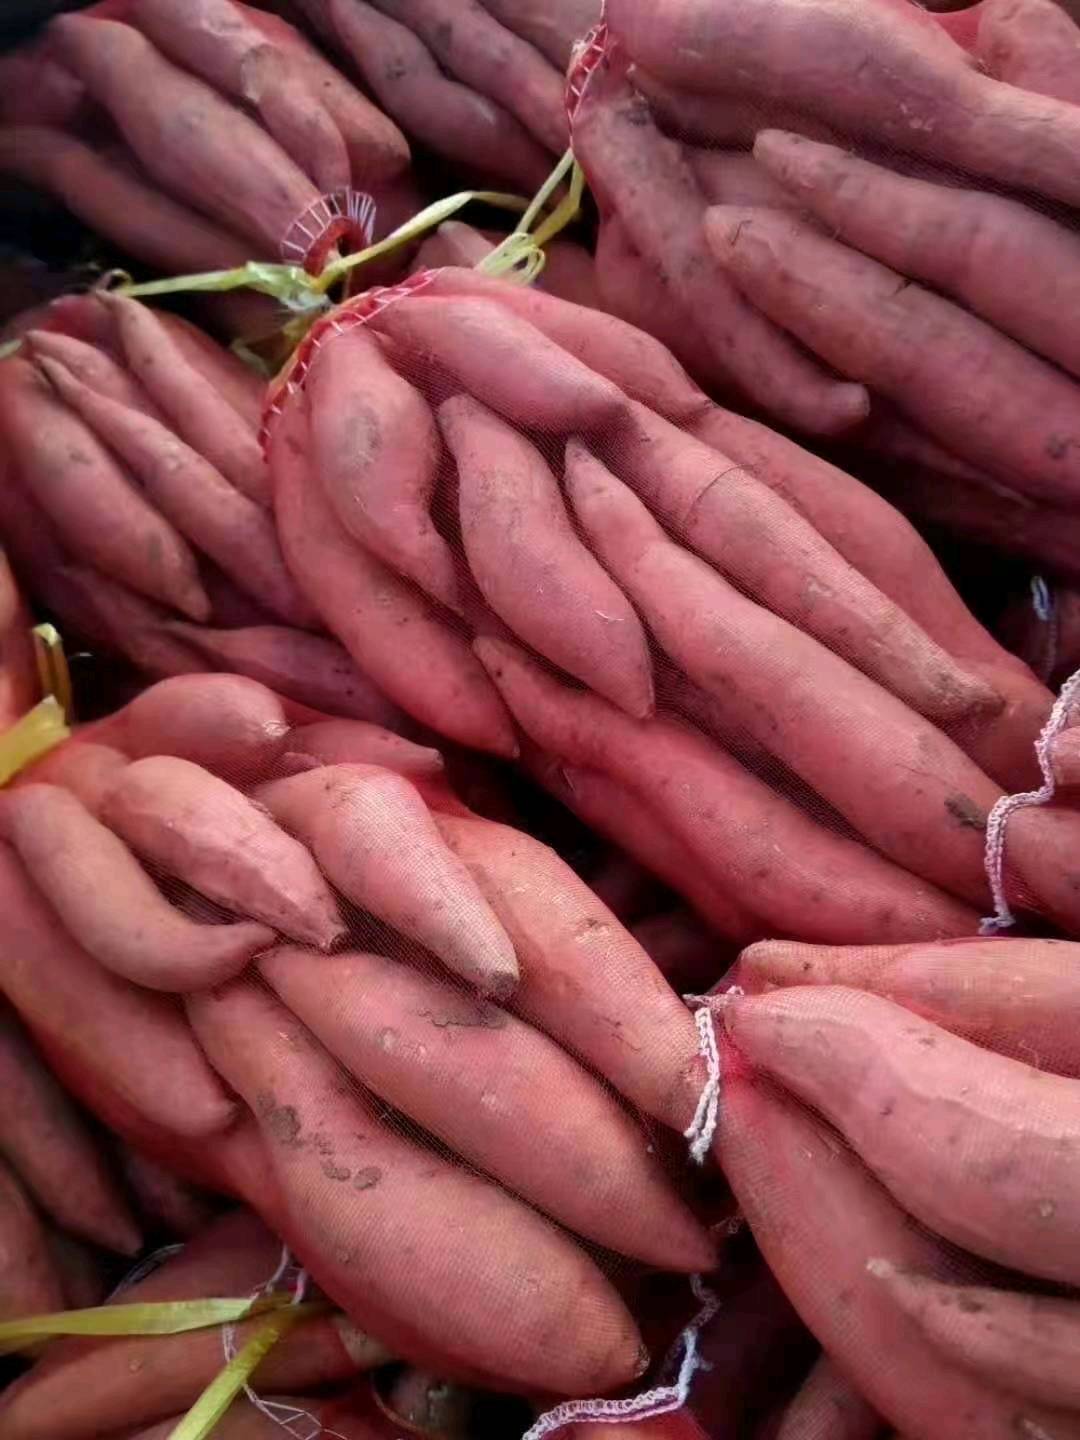 15265199952大量供应西瓜红红薯常年供应中货源充足质量一流价格便宜支持全国发货15265199952